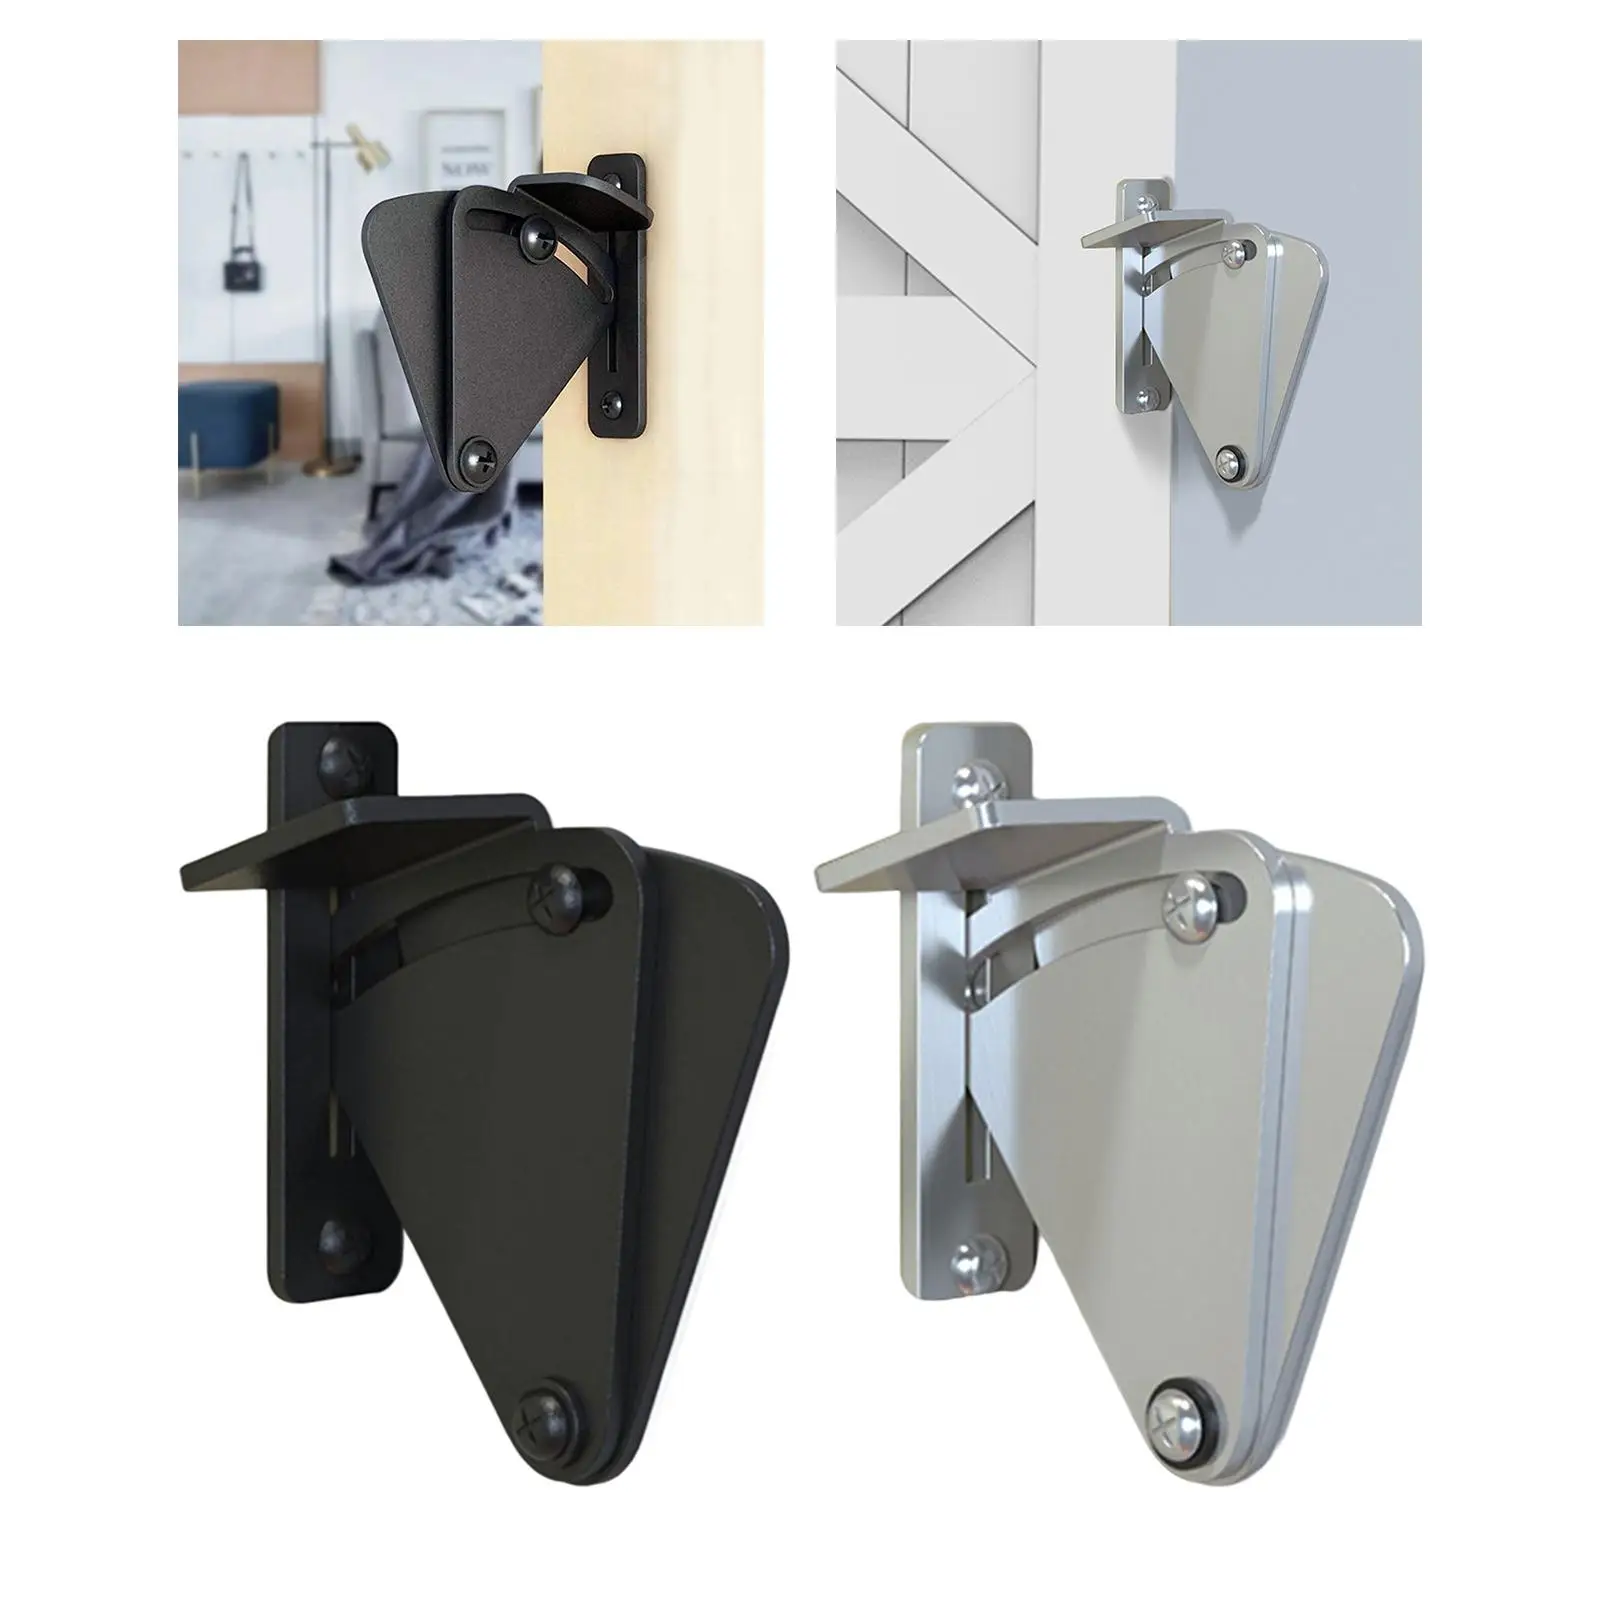 Portable Sliding Barn Door Lock Door Buckle Furniture Hardware for Bedroom Shed Wood Gates Closet Door Garage